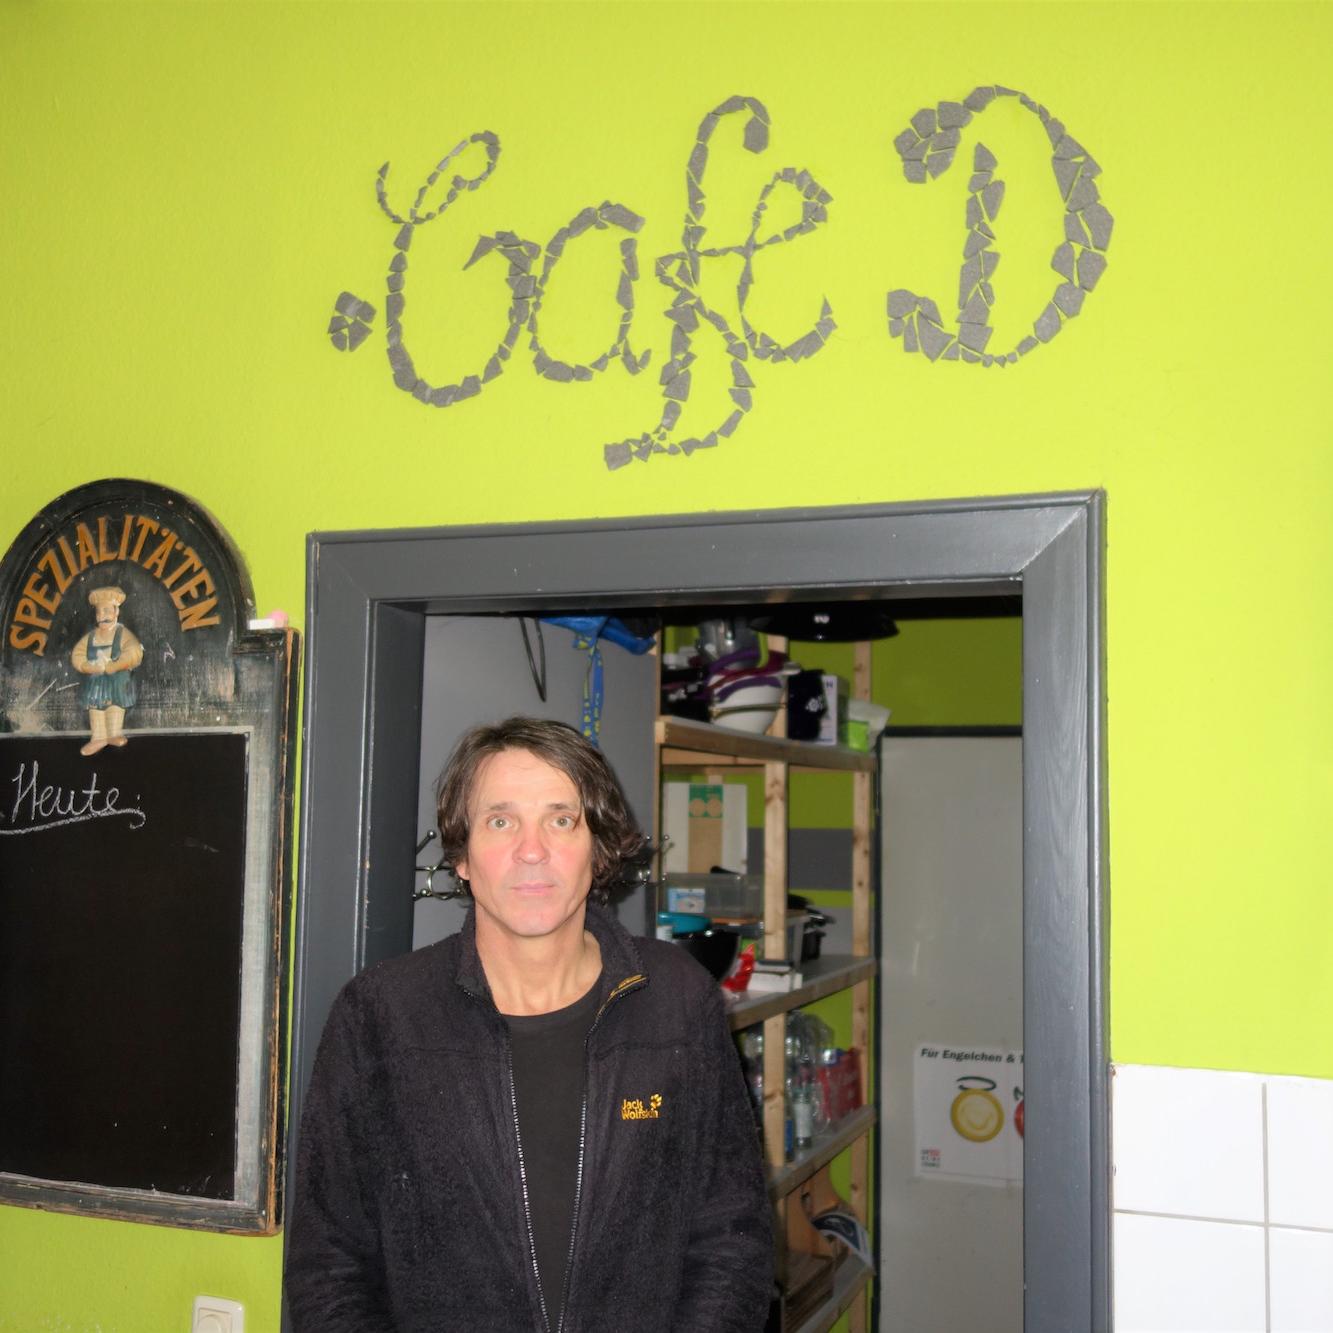 Andreas Schön, der stellvertretende Leiter der Dürener Sucht- und Drogenberatung, vor dem Namen des Cafés im Innern.